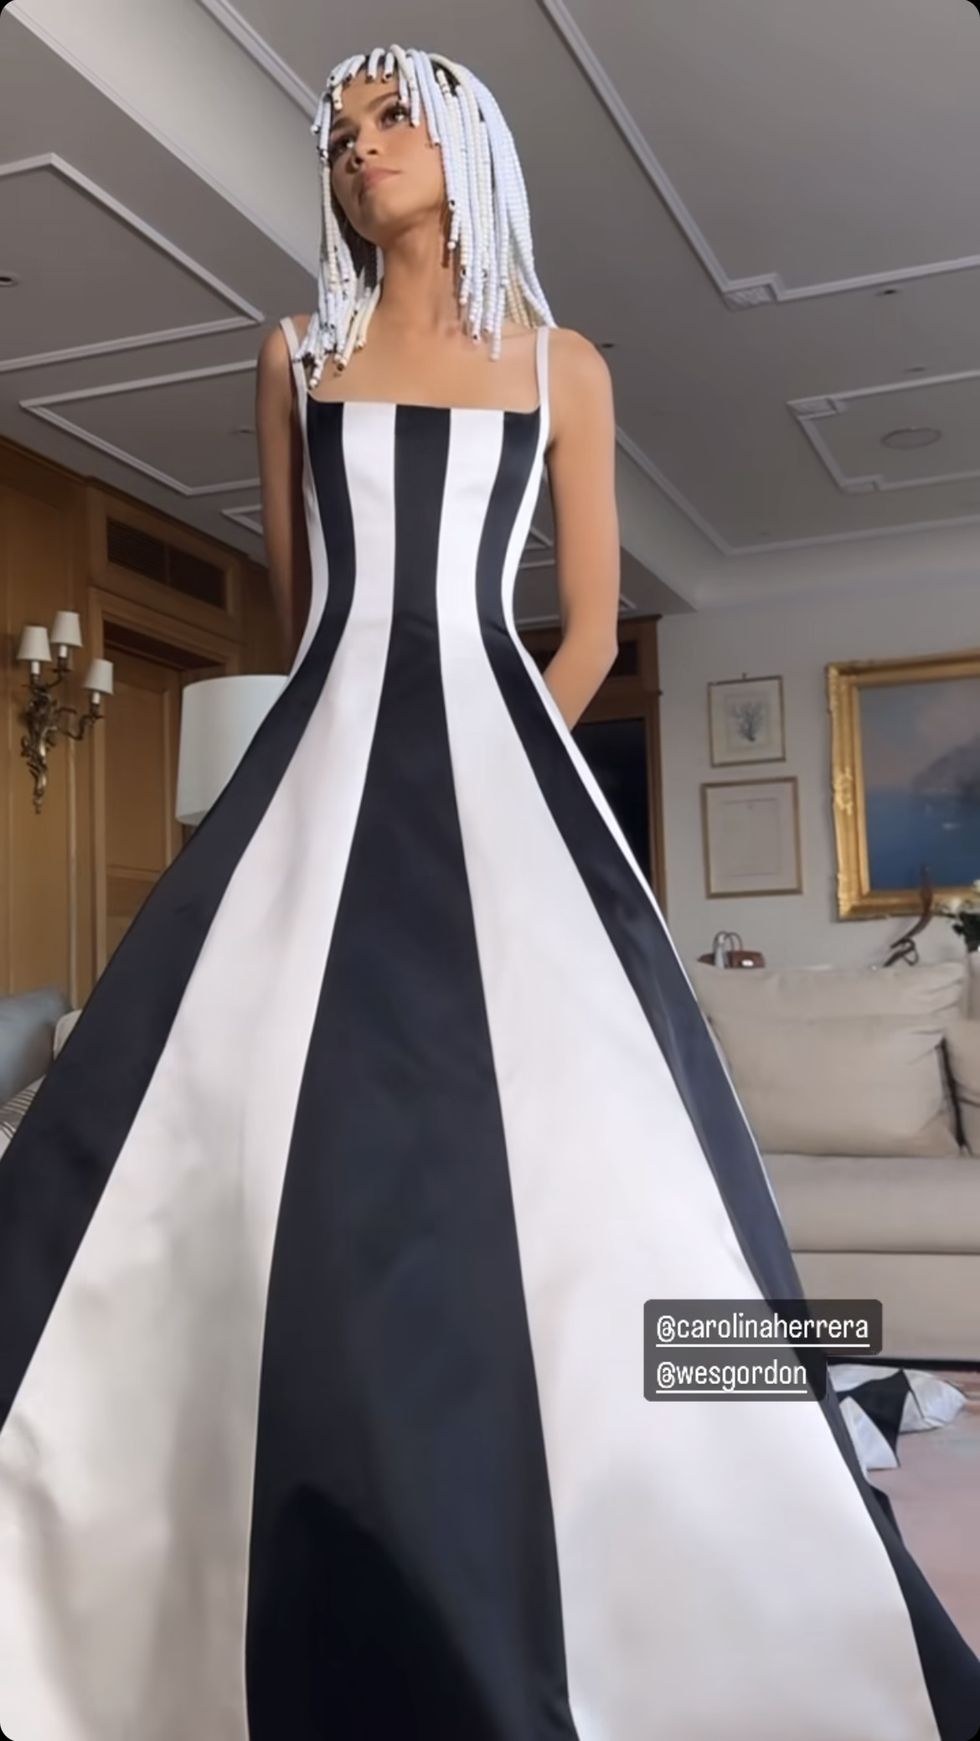 Zendaya recrea el icónico look de Venus y Serena Williams con un vestido de gala en blanco y negro